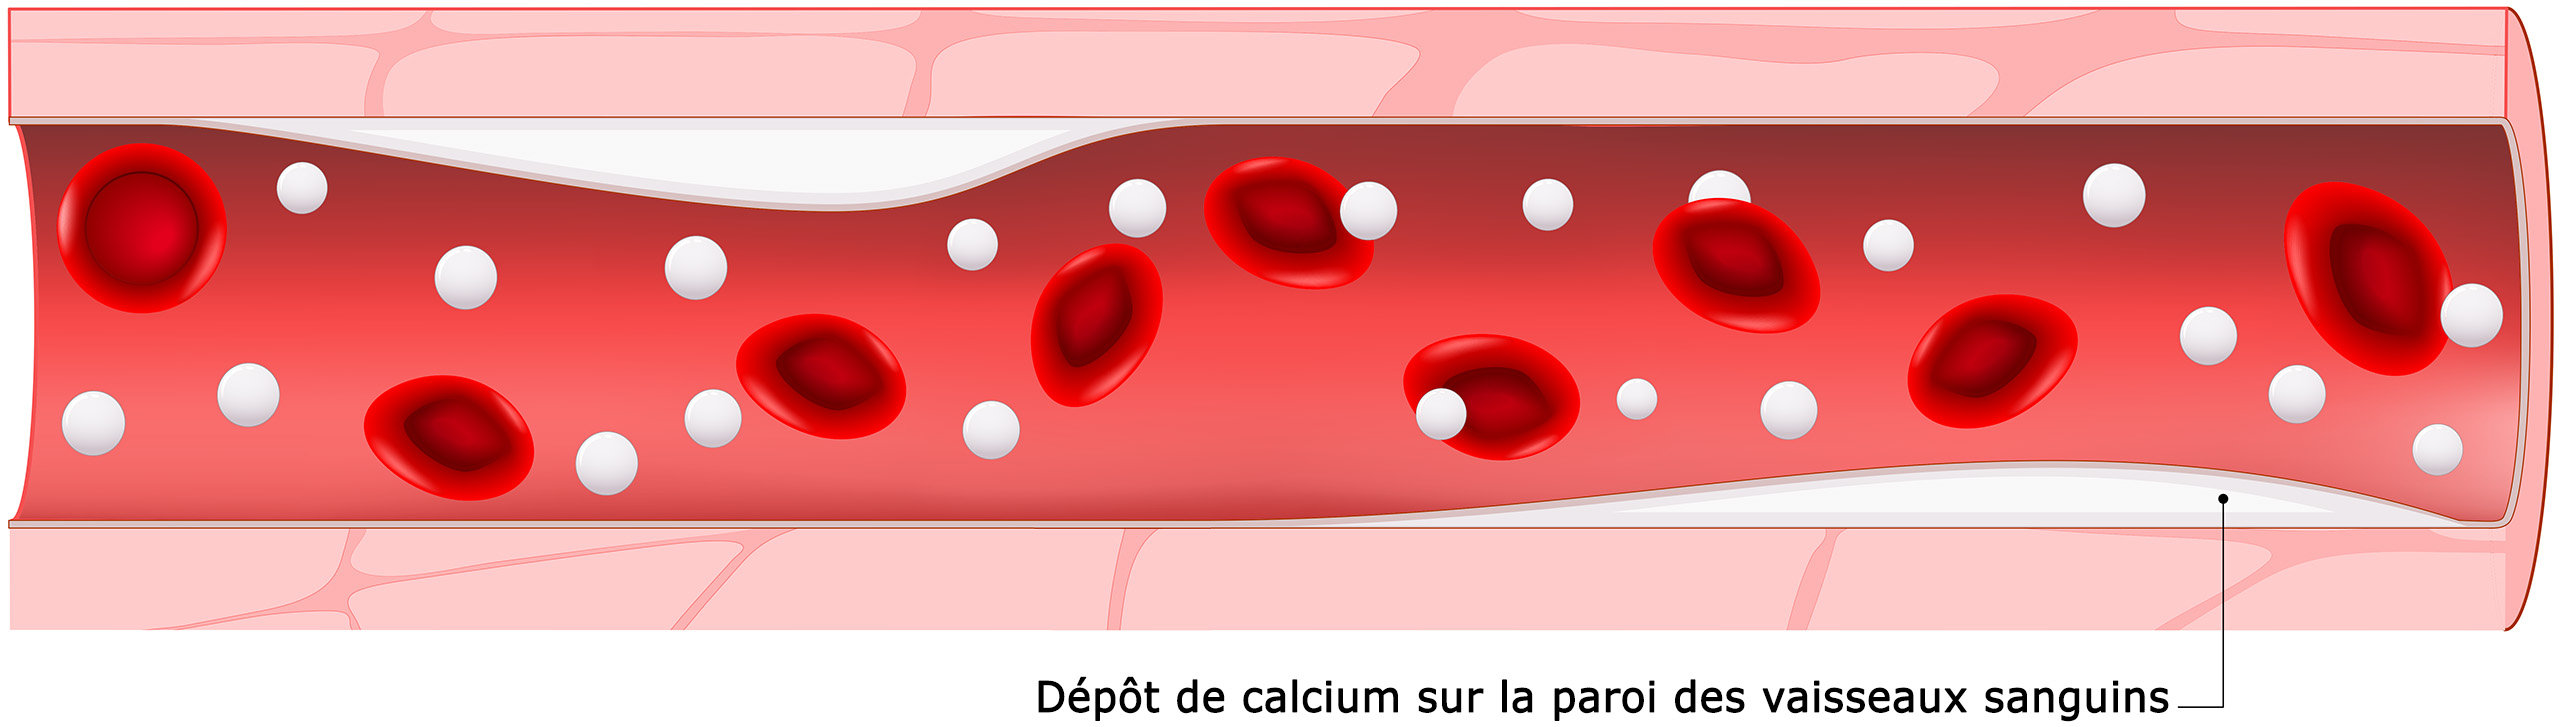 Schéma d'un dépôt de calcium dans un vaisseau sanguin 